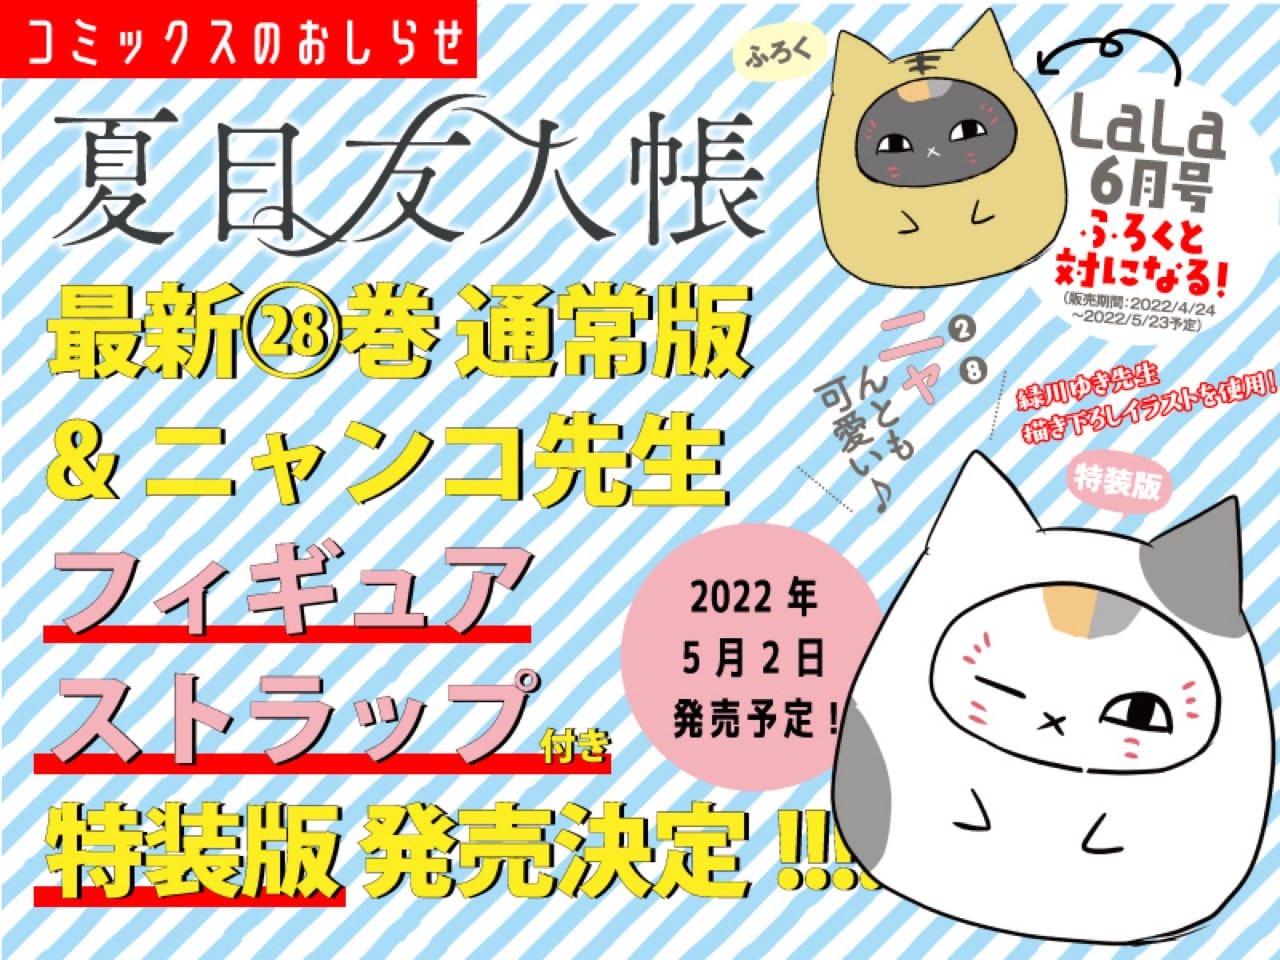 夏目友人帳 第28巻 5月2日にストラップ付き特装版と同時発売!